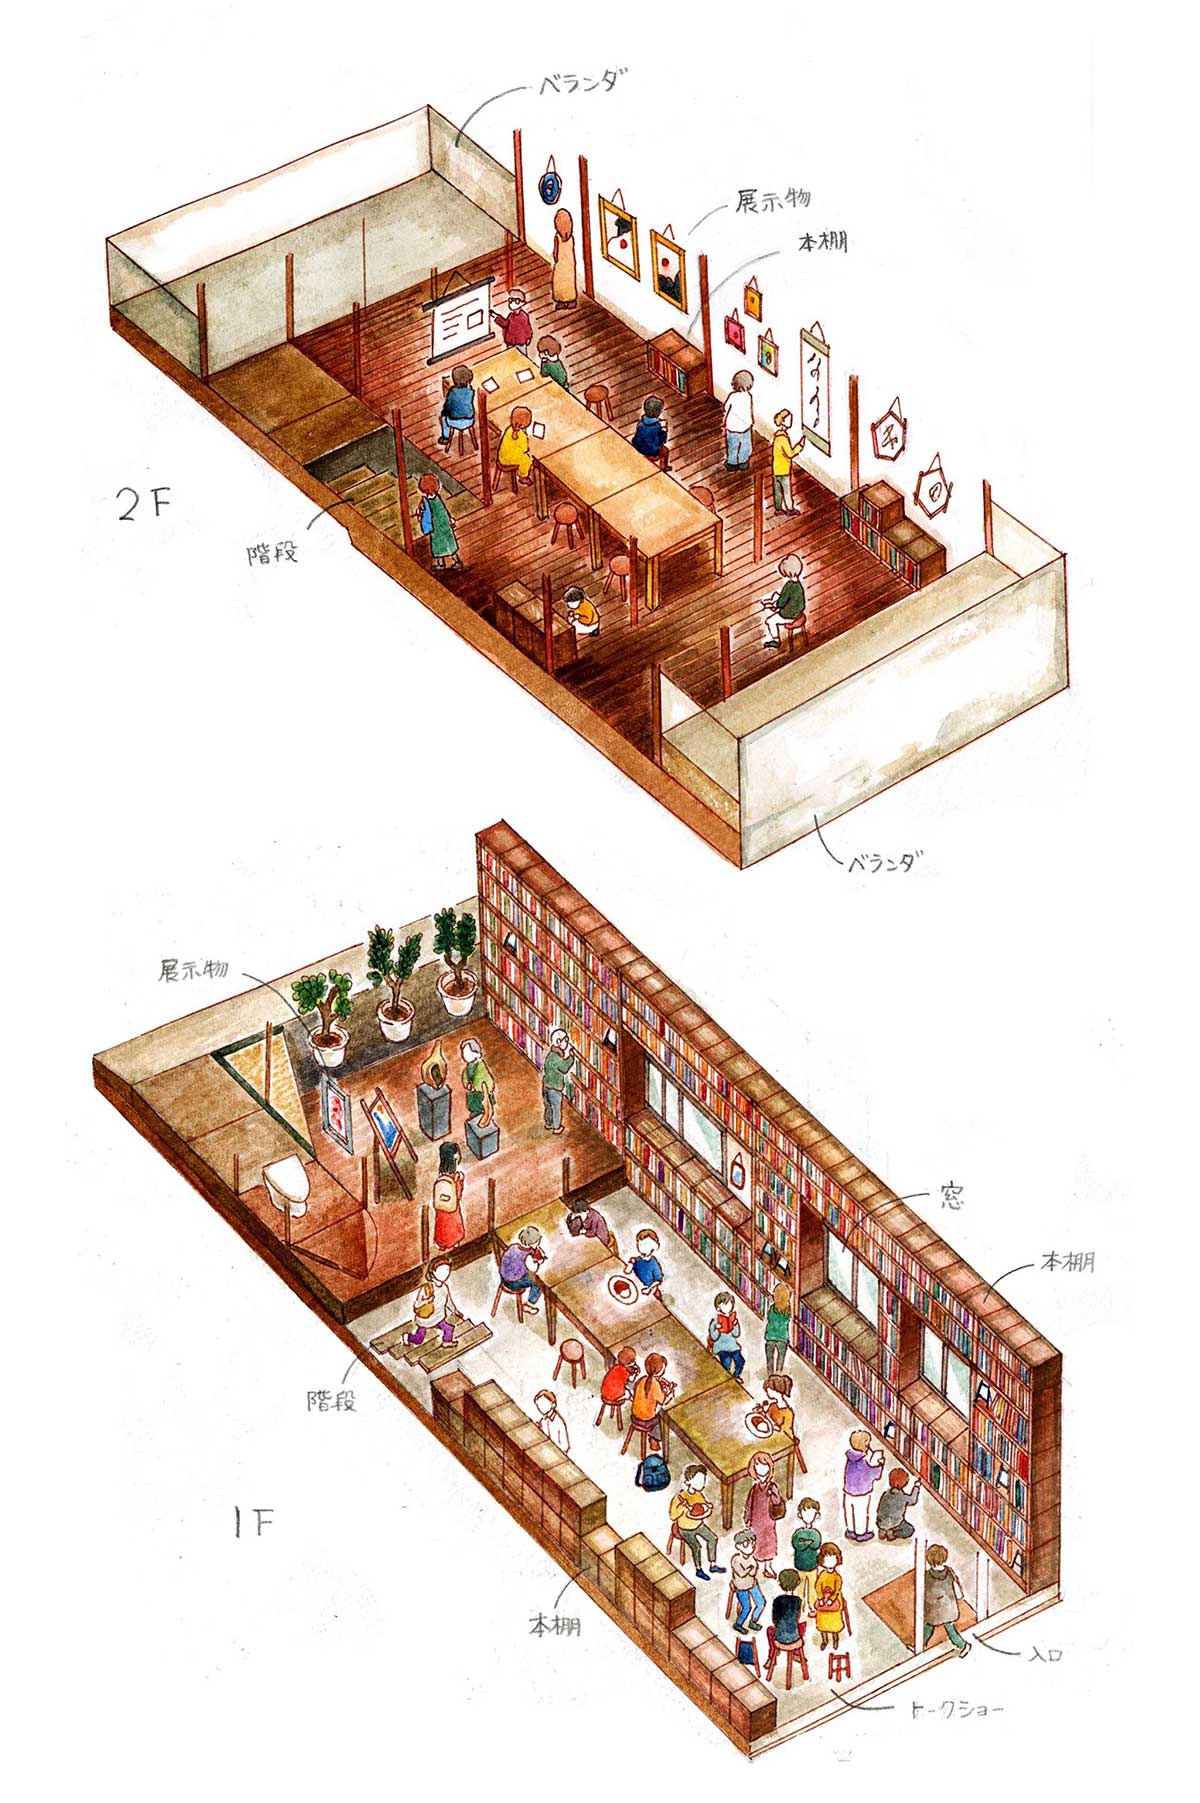 コクテイル書房　完成予想図。 改装予算は600万円程度と見ている